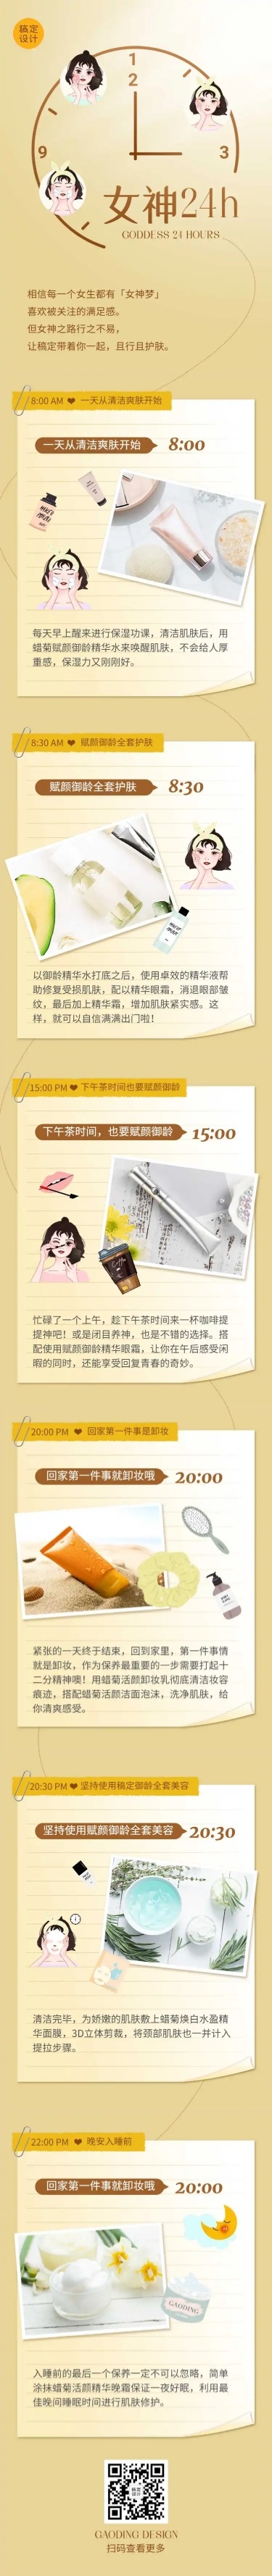 妇女节女神24小时产品促销活动文章长图